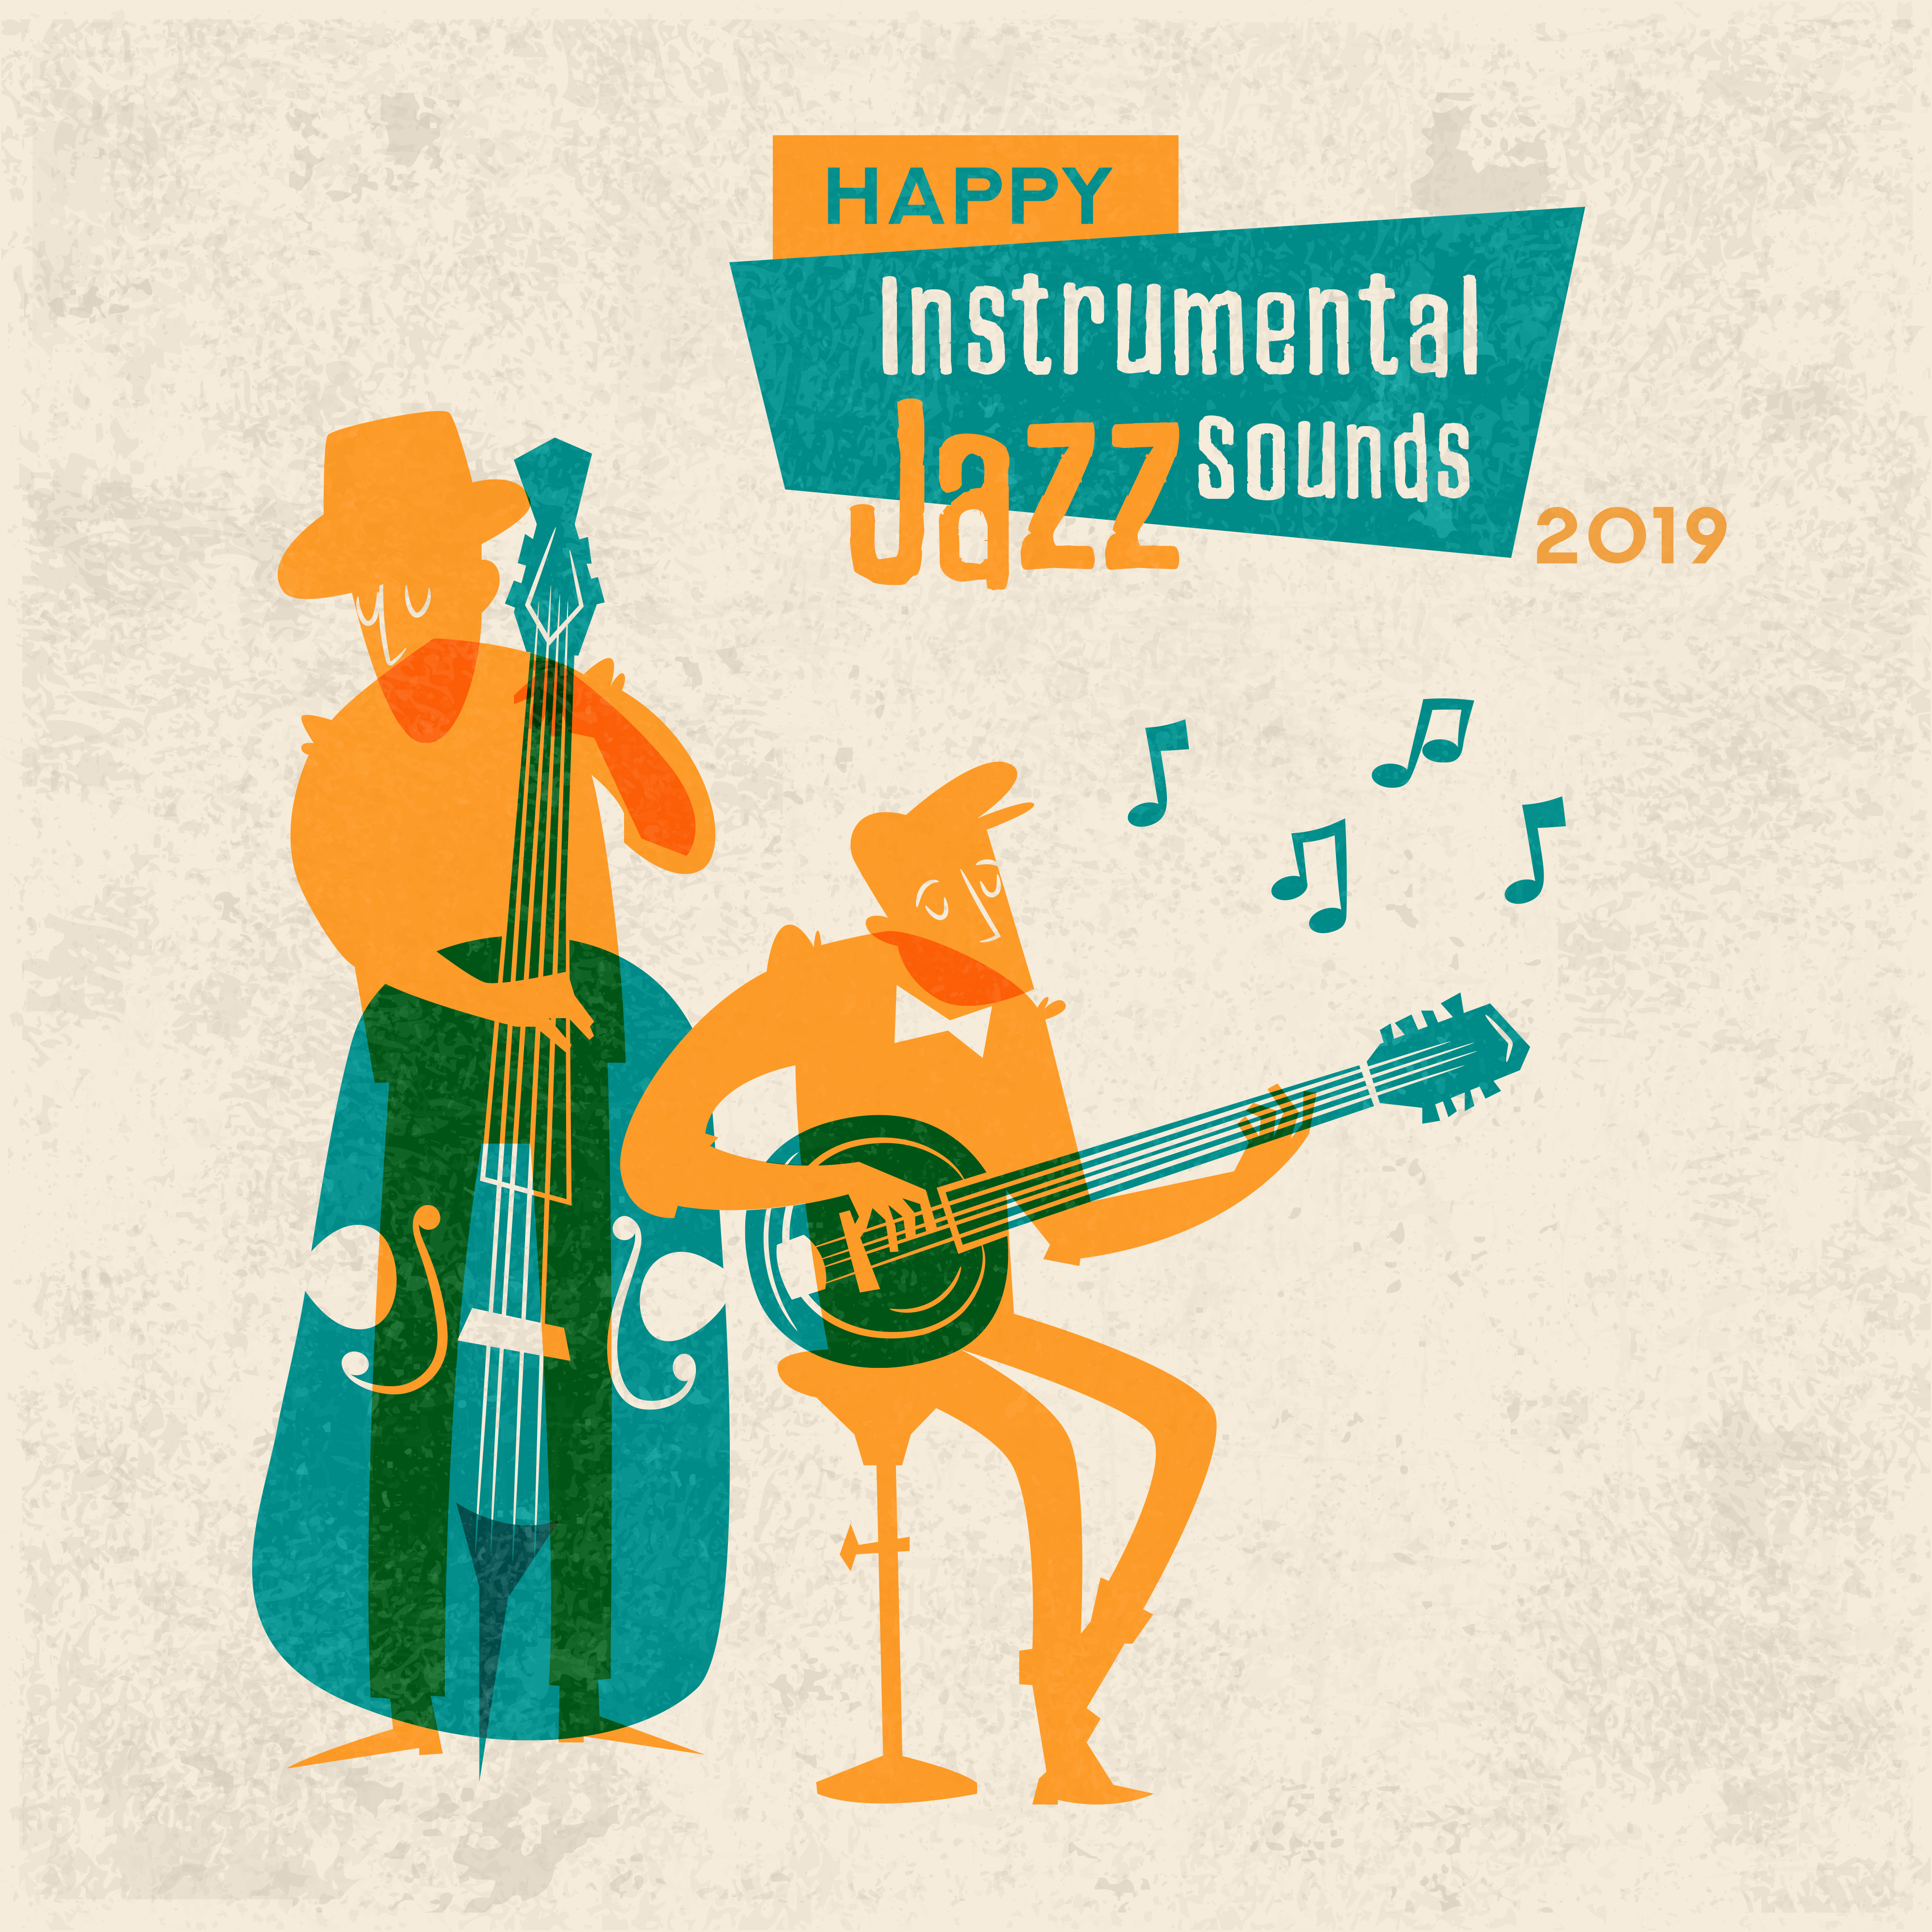 Happy Instrumental Jazz Sounds 2019